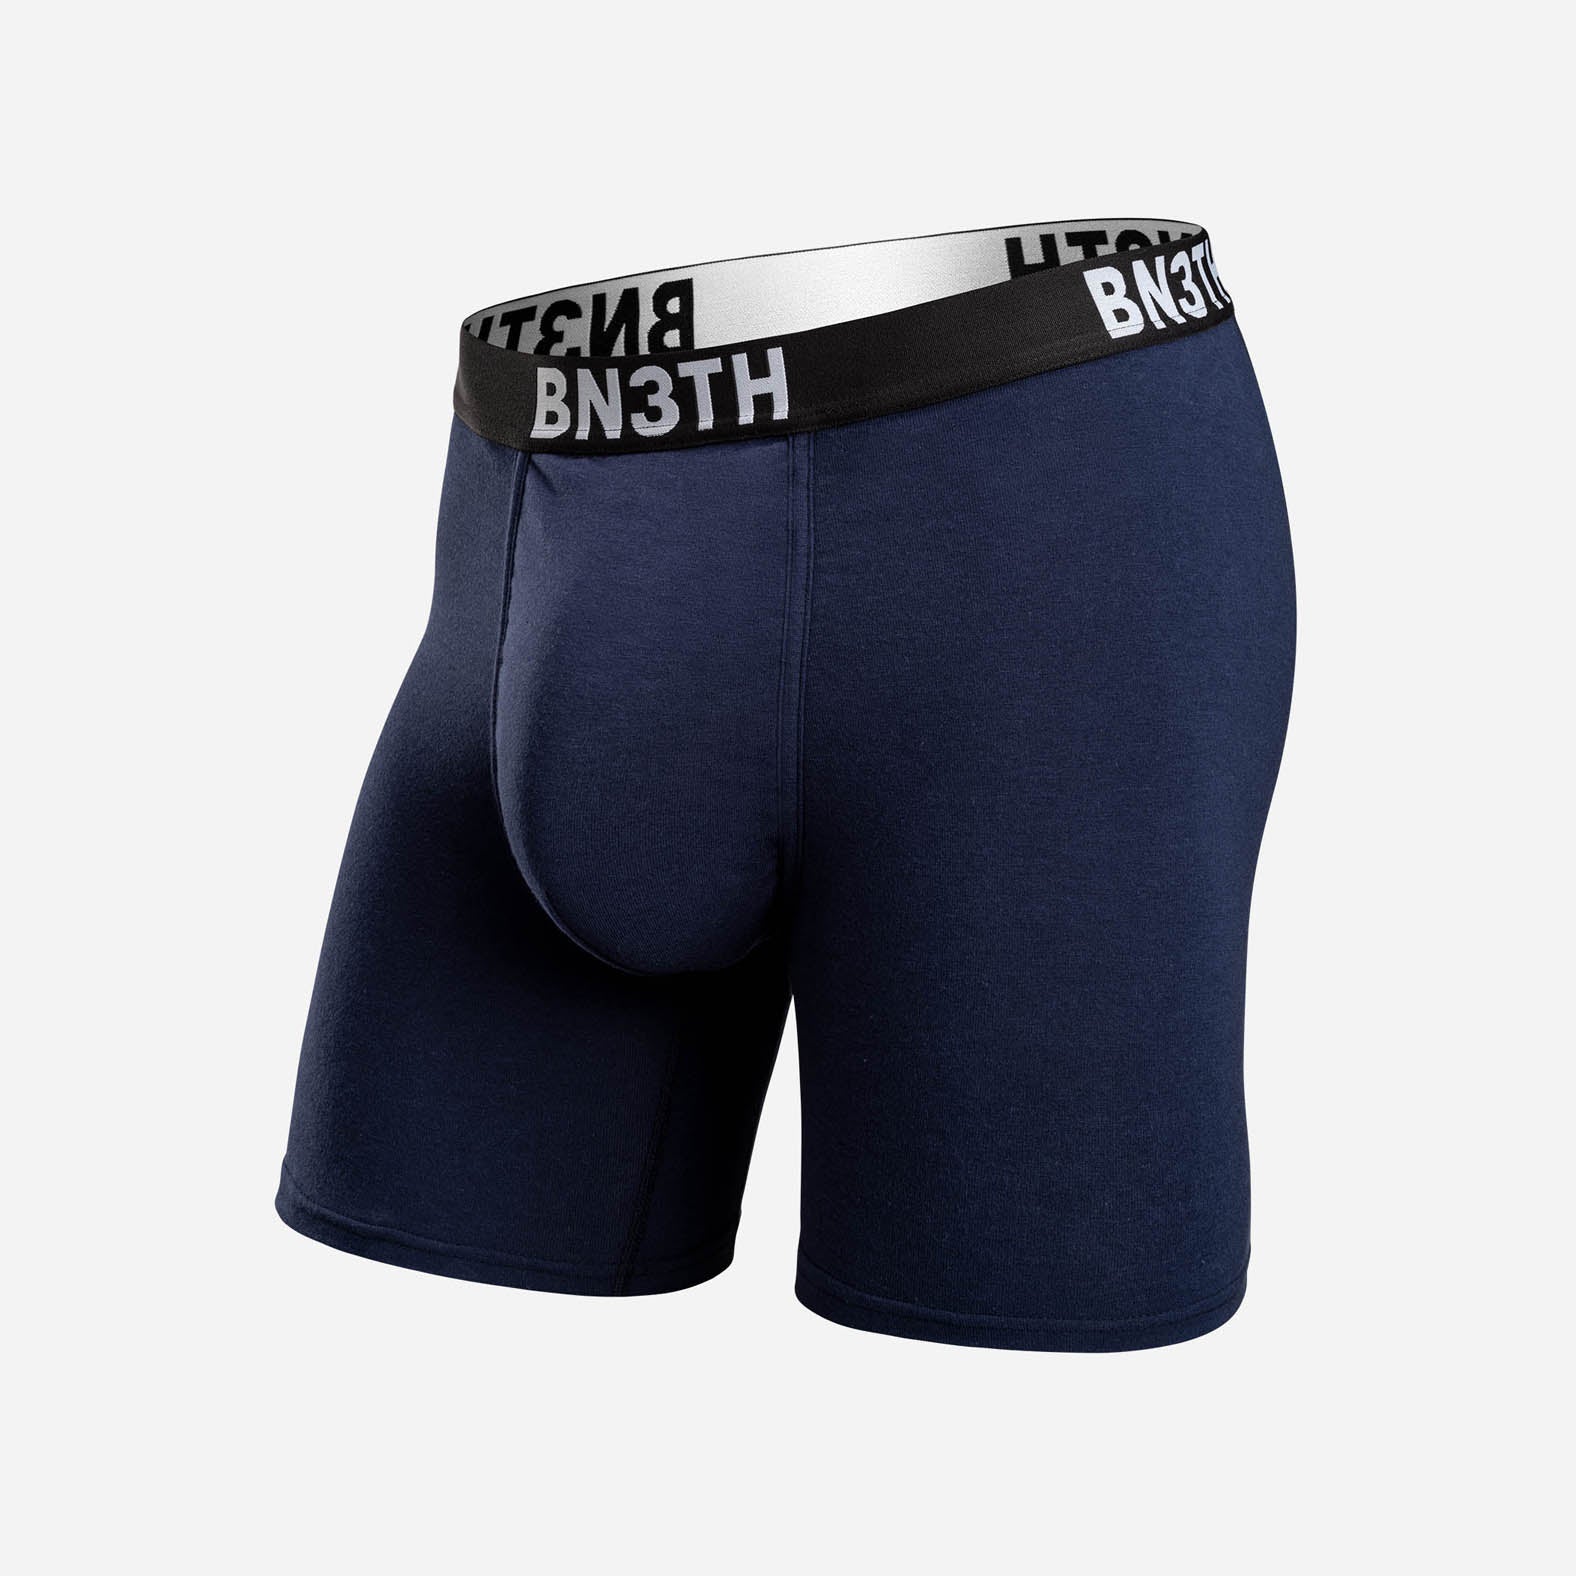 BN3TH Underwear (The Most Comfortable Undergarment Wear)